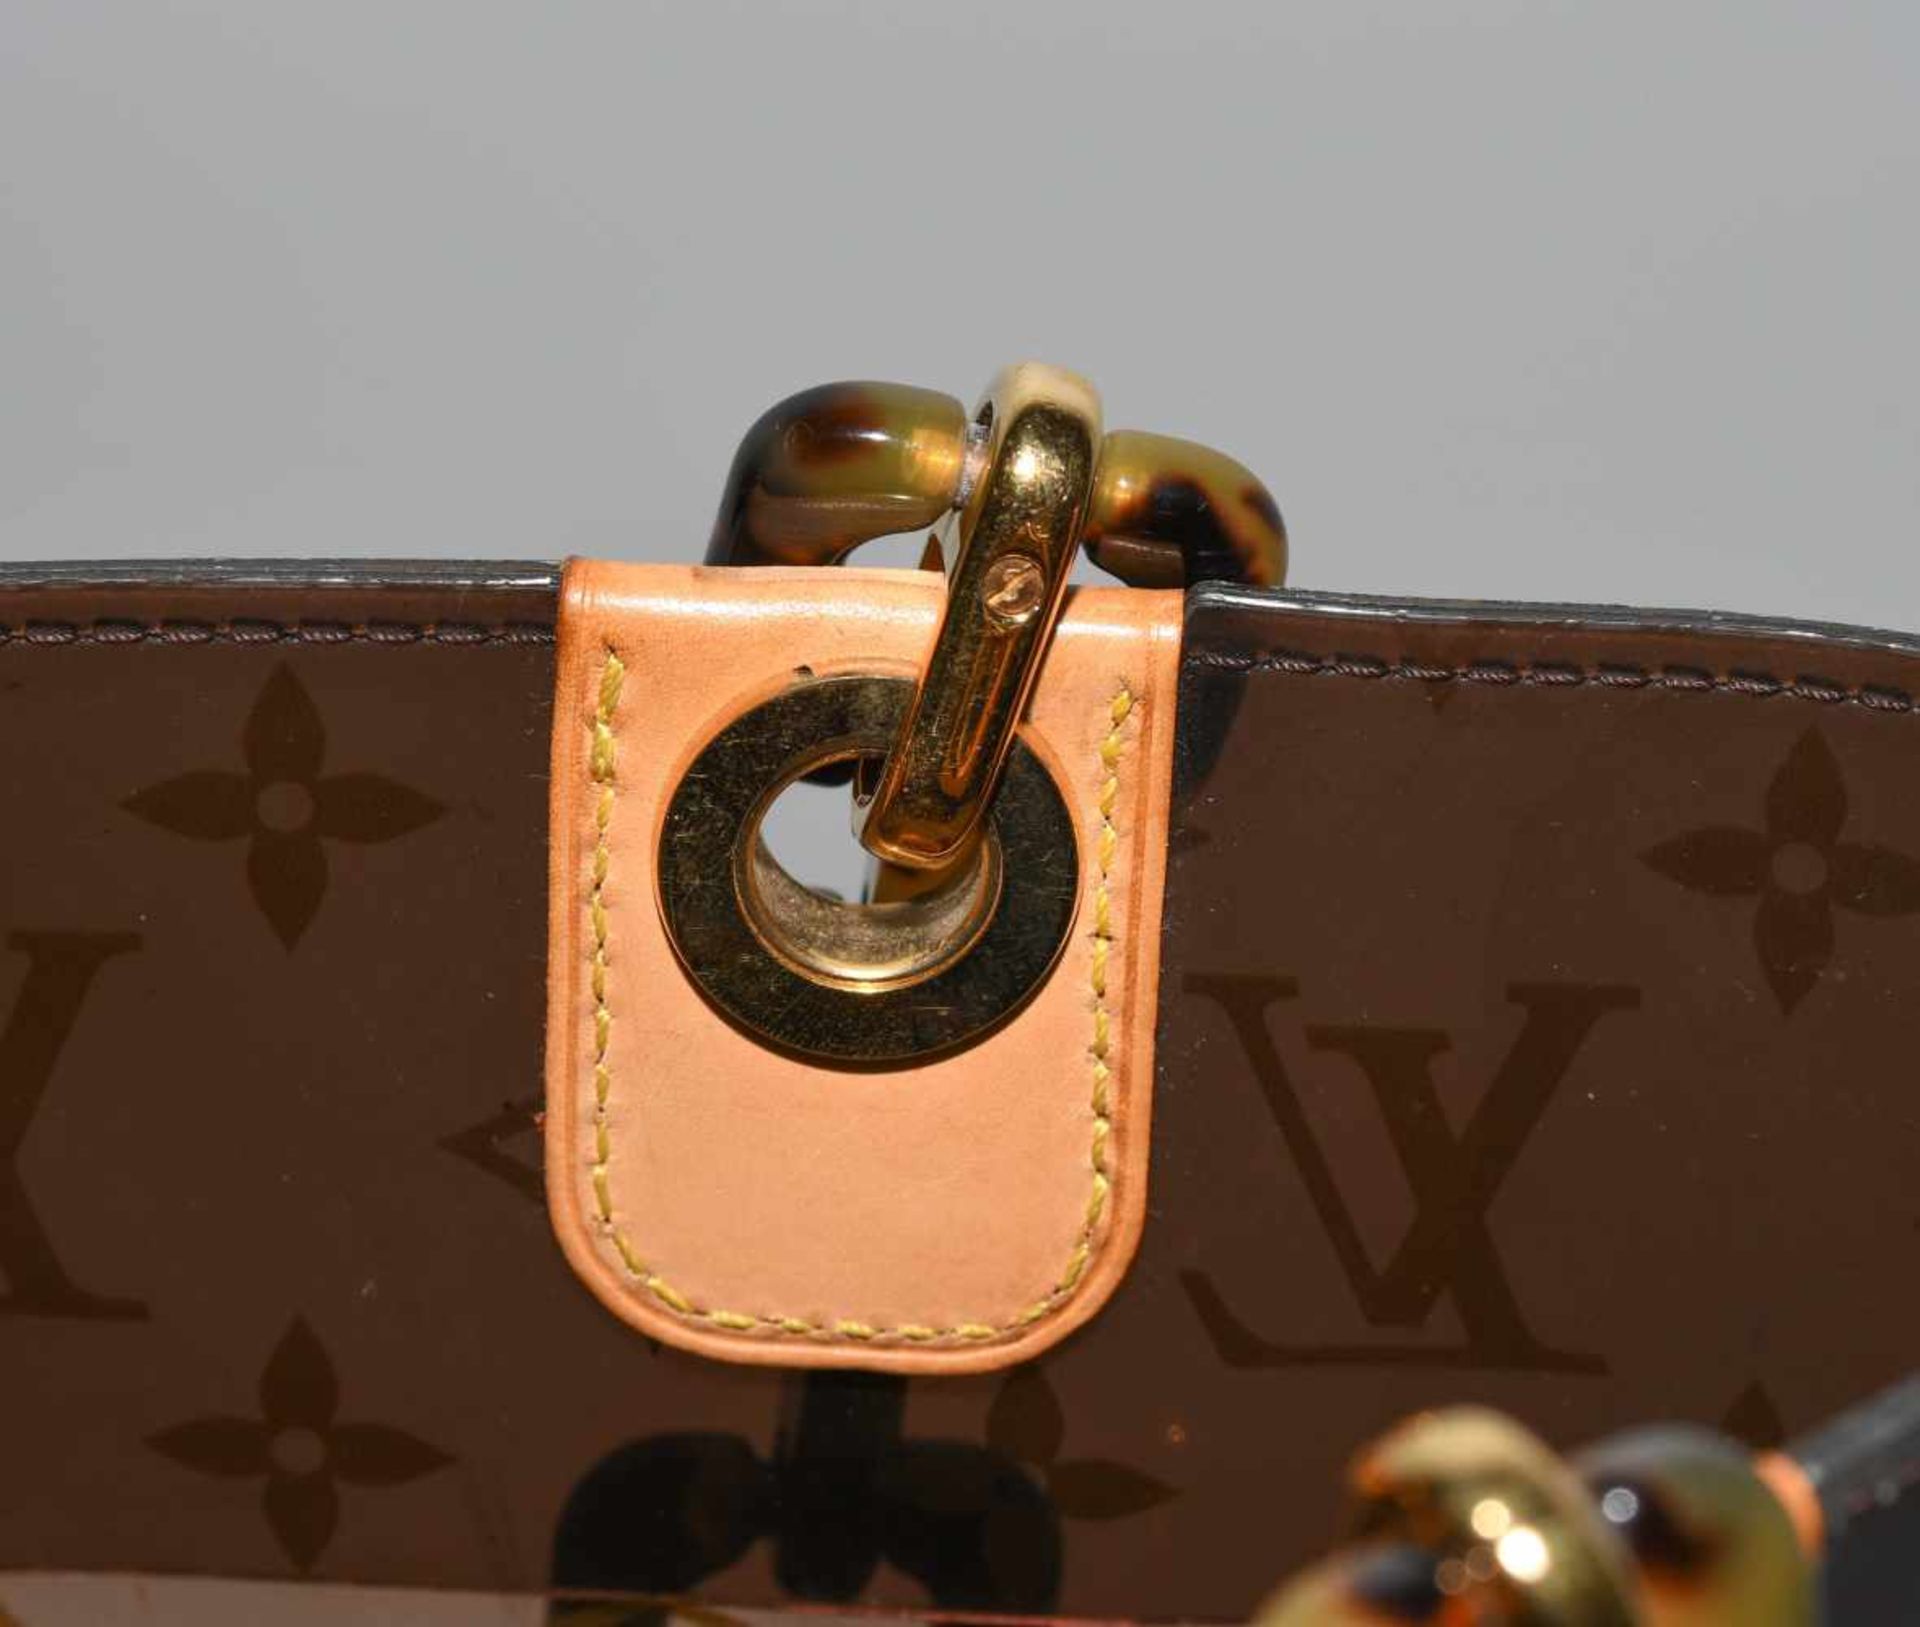 Louis Vuitton, "Ambre sac cabas"Schultertasche aus braunem Vinyl mit klassischem Monogram Muster. - Bild 6 aus 17